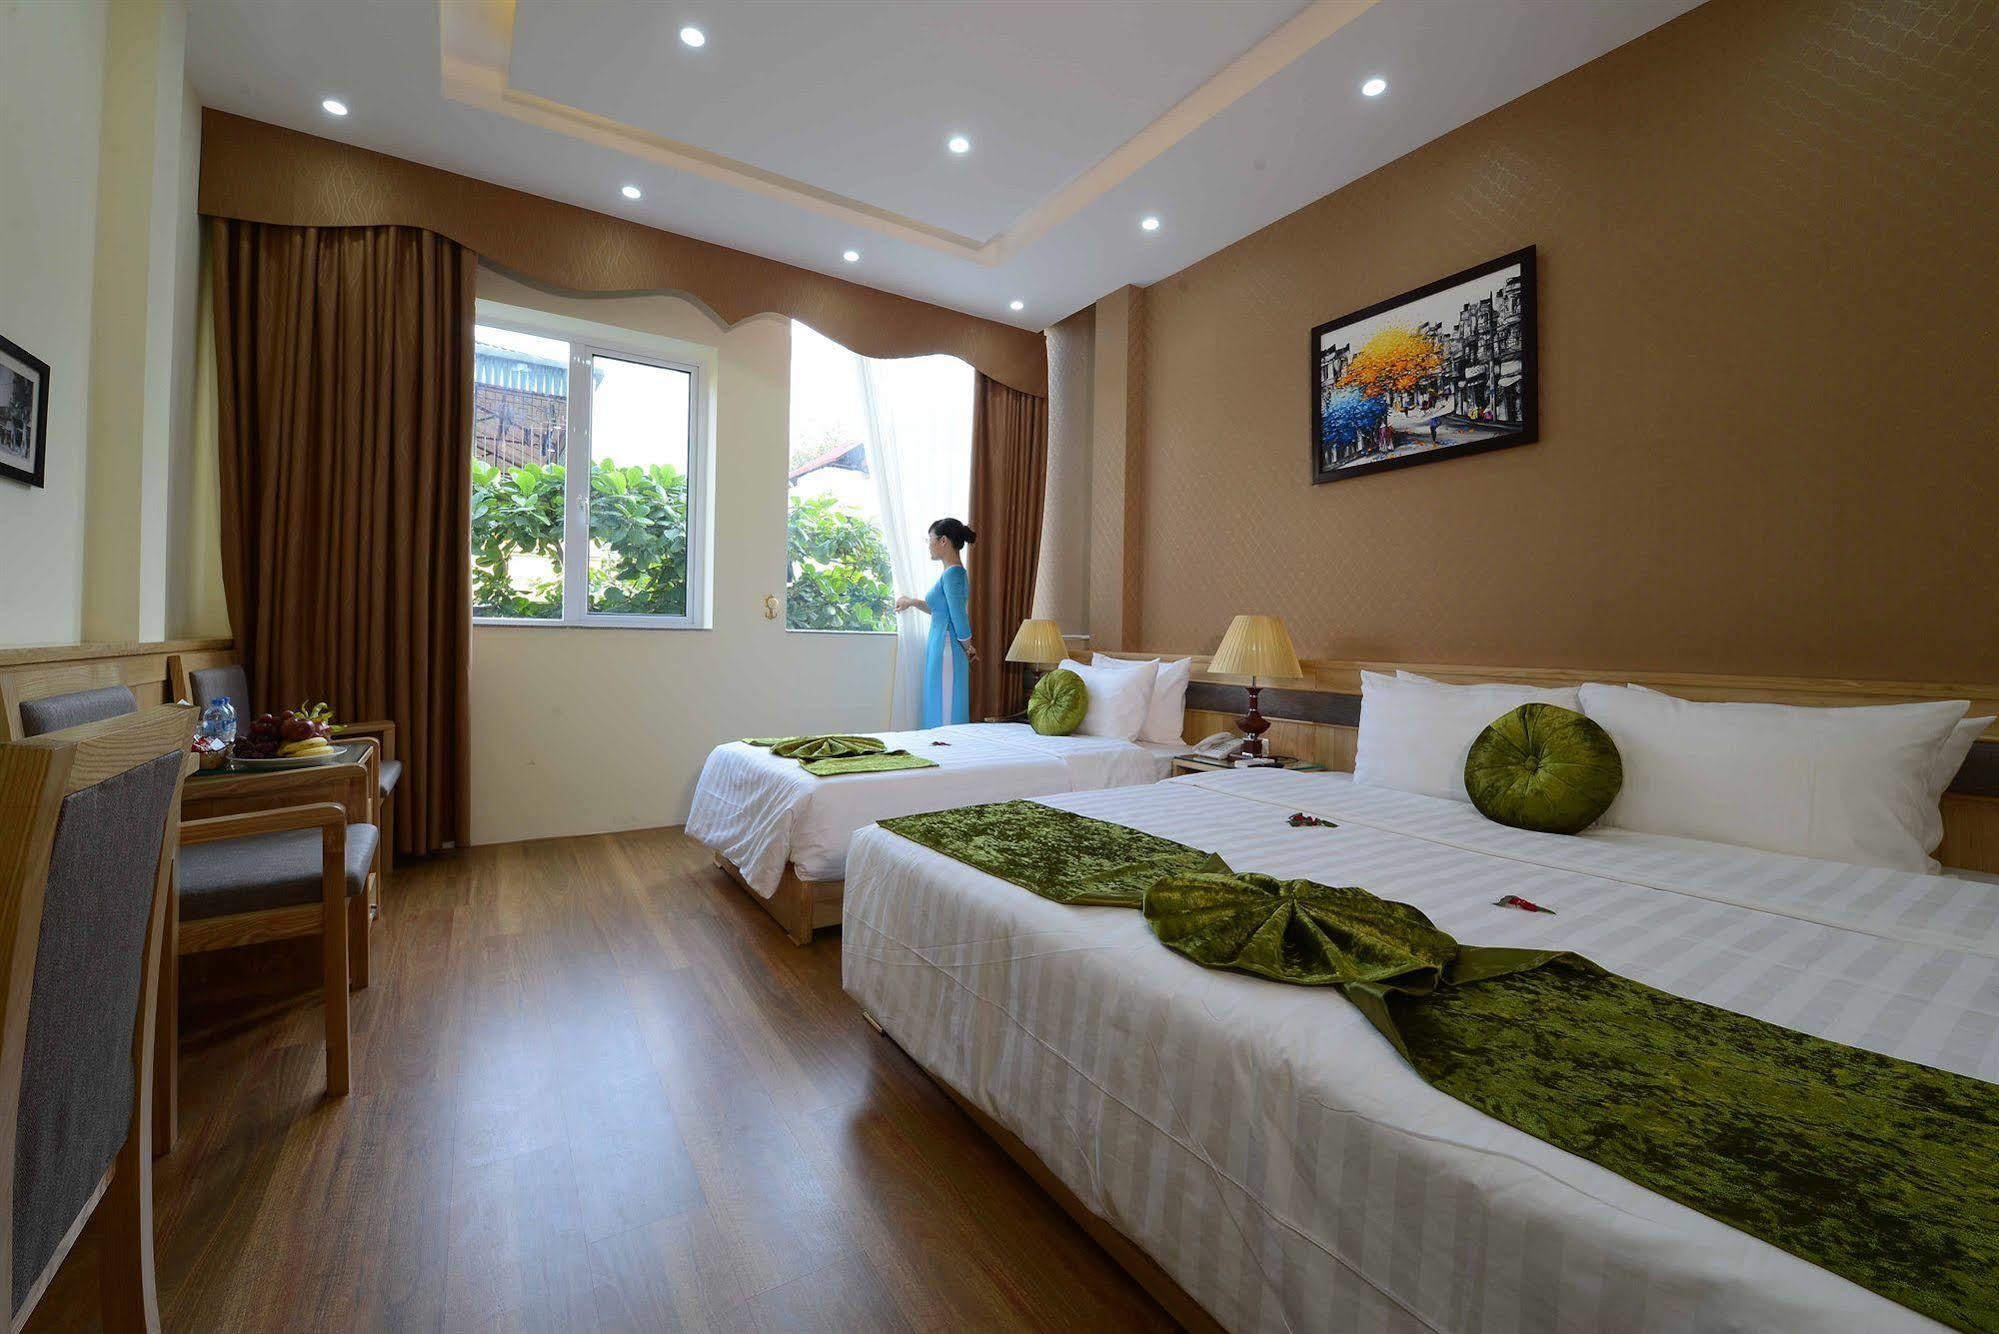 Blue Hanoi Inn Hotel Eksteriør billede